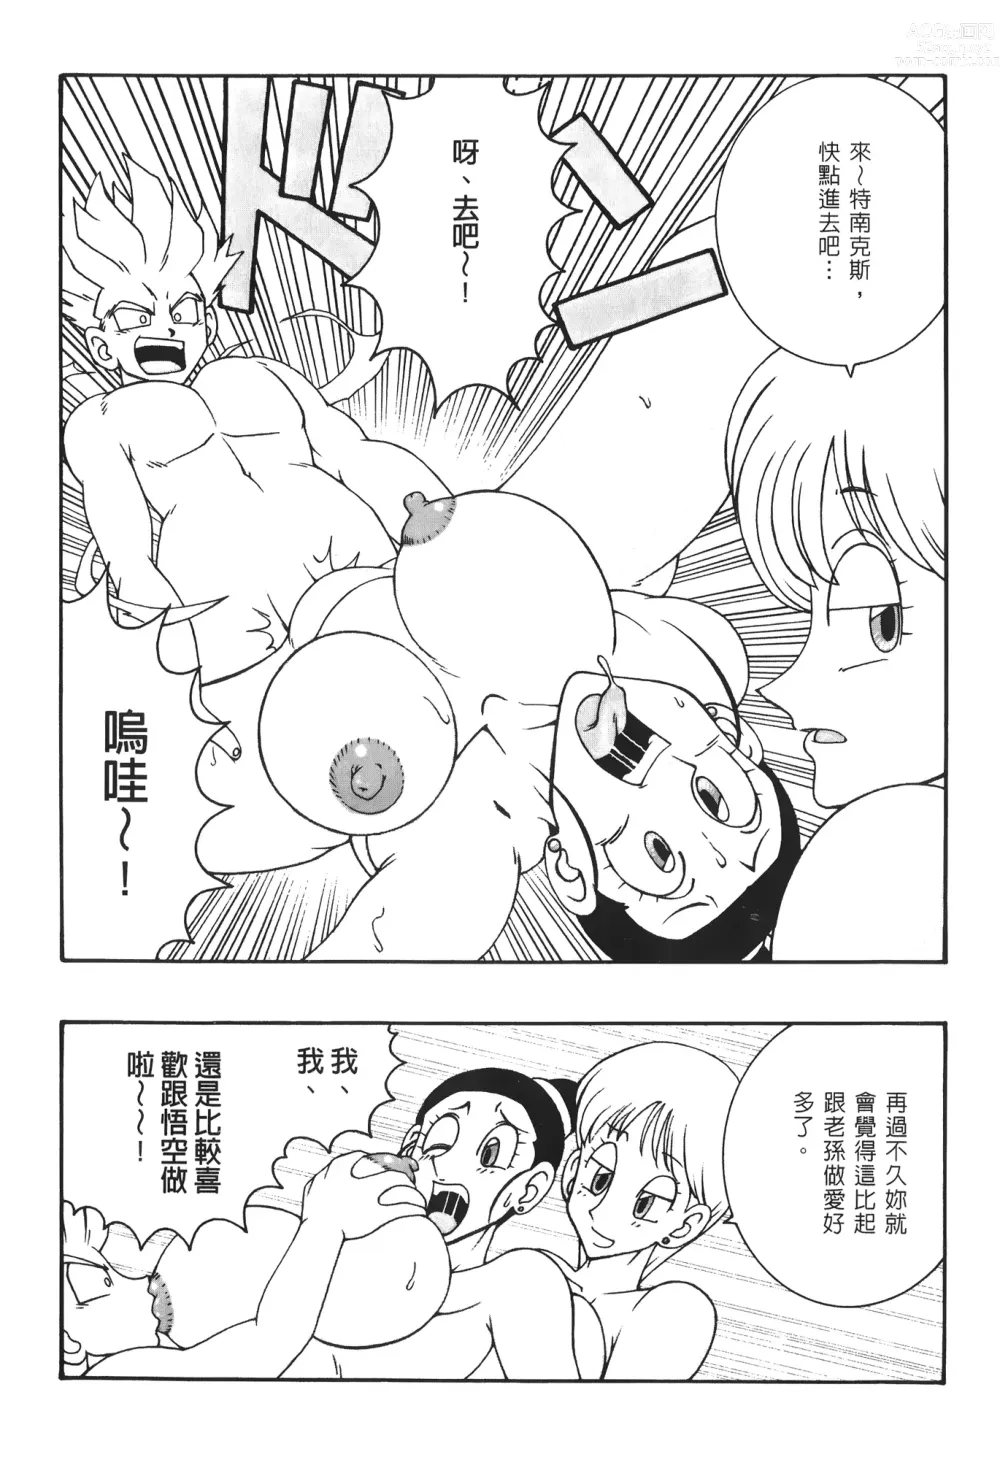 Page 13 of doujinshi ドラゴンパール 03